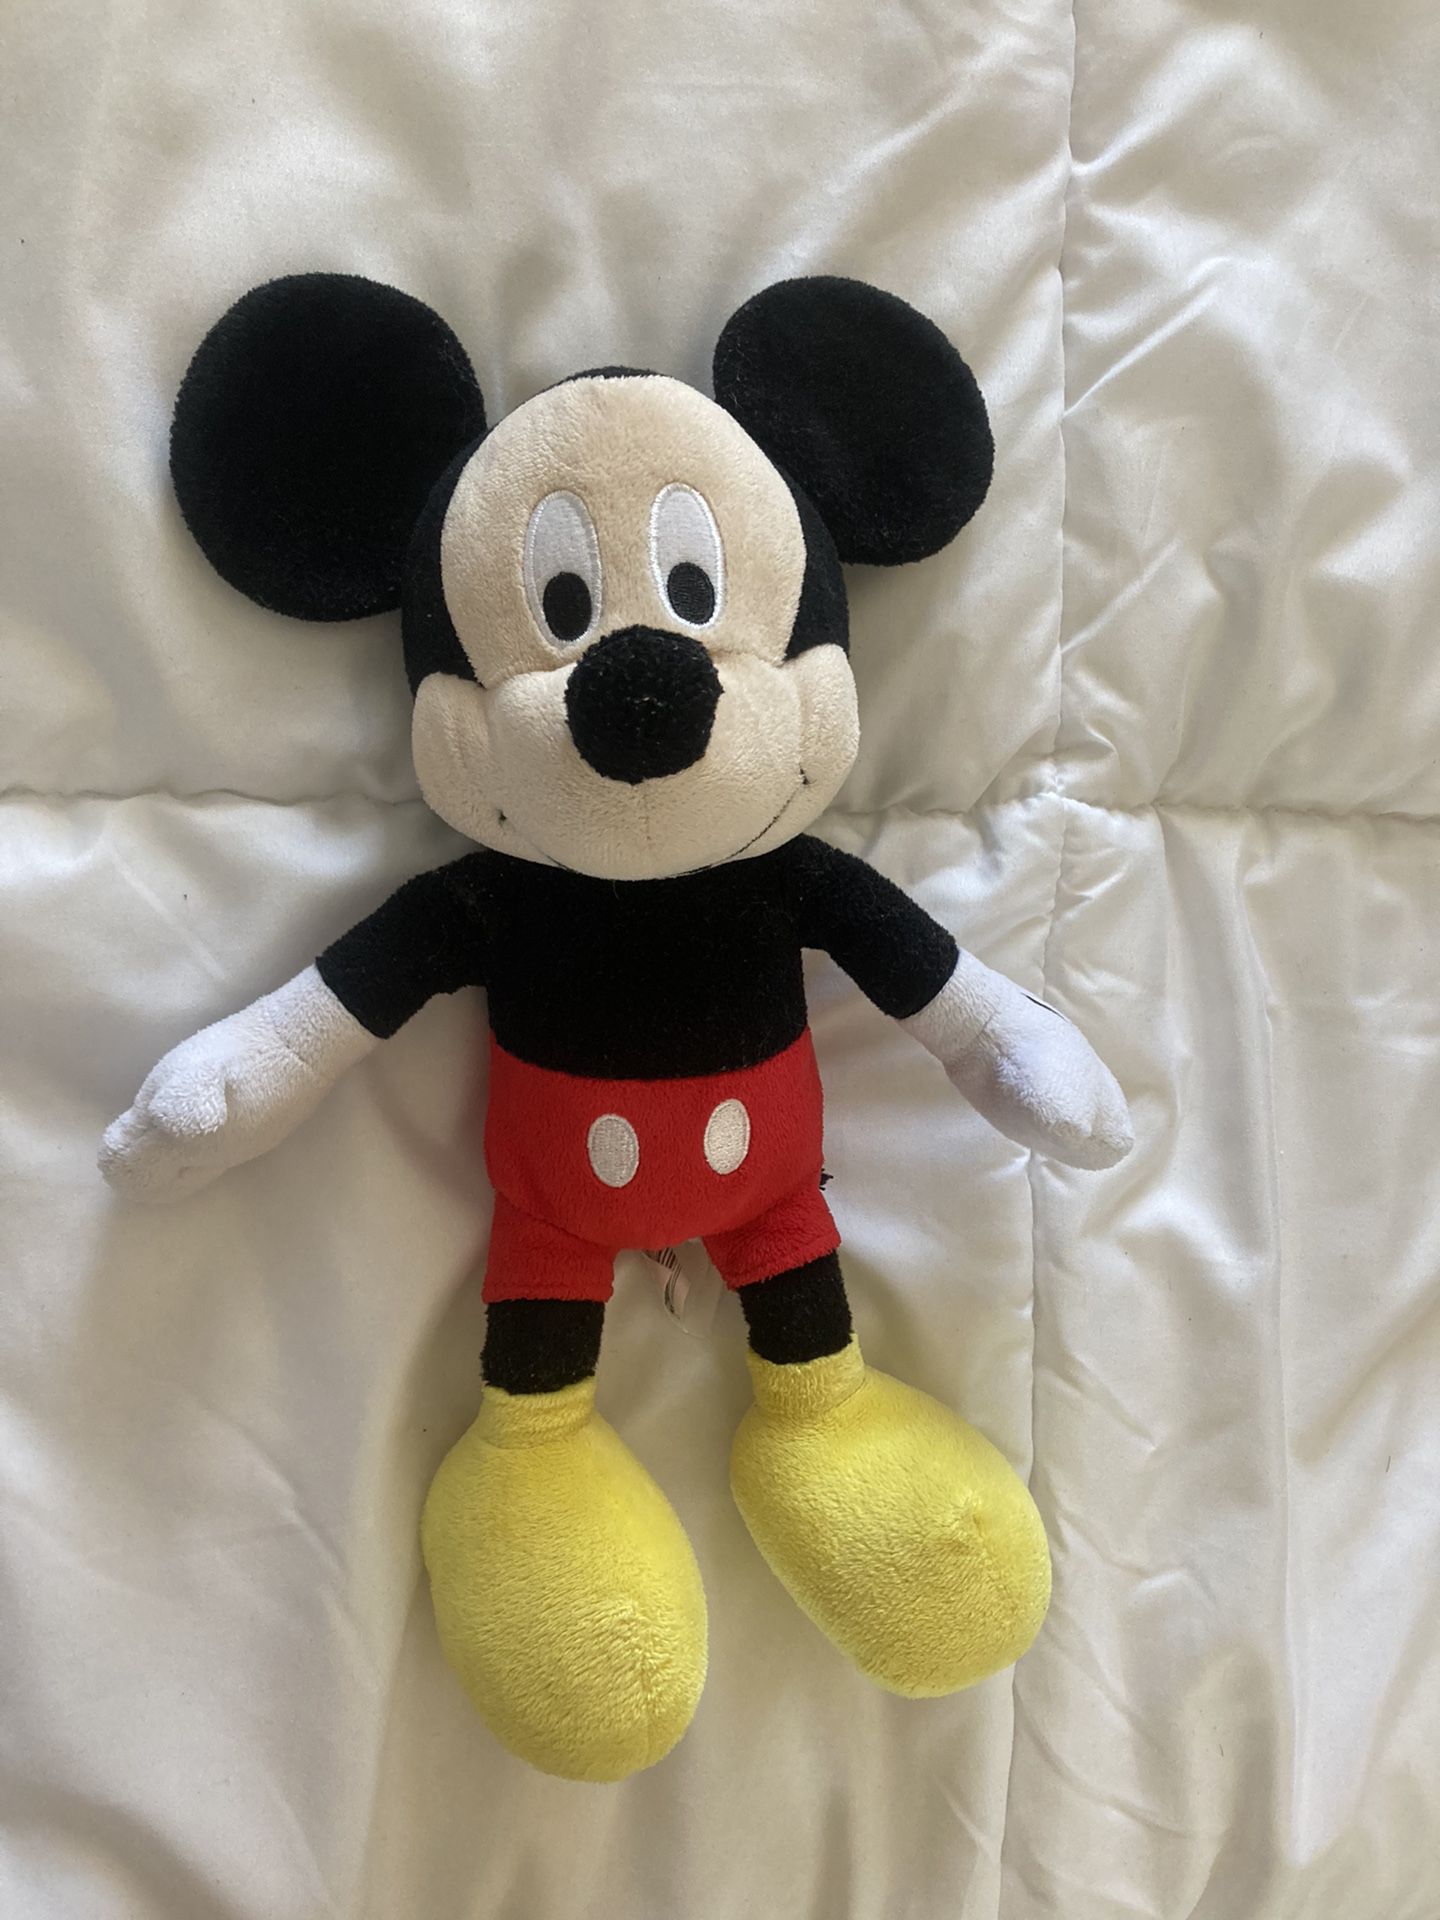 Mickey Mouse Plush Stuffed Animal